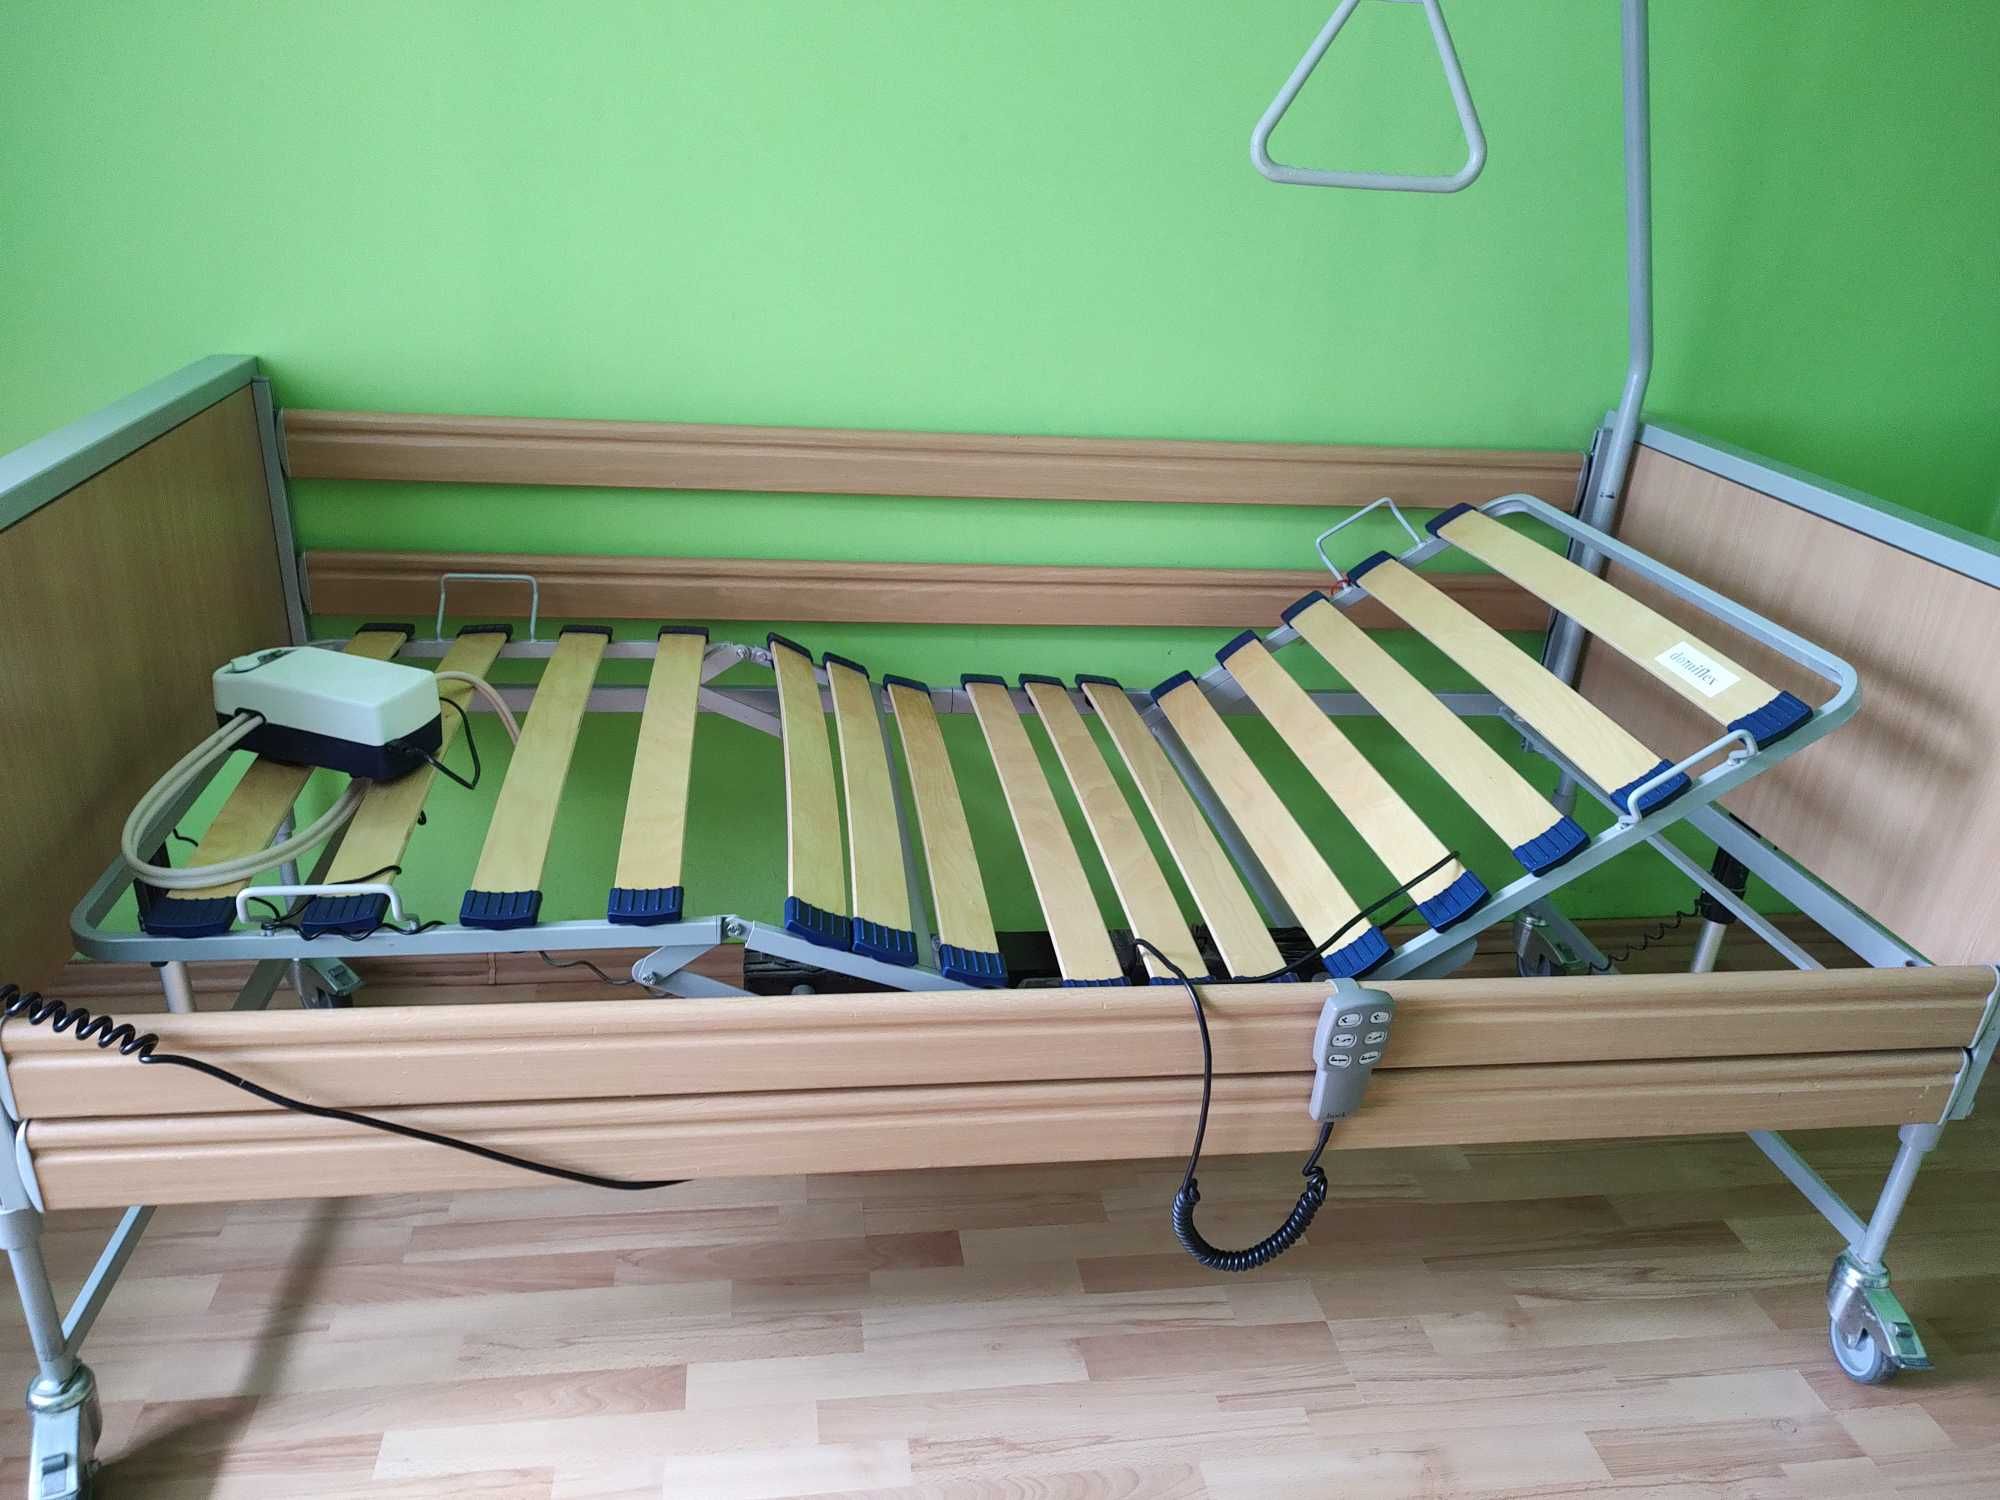 Łóżko rehabilitacyjne elektryczne z wózkiem inwalidzkim i chodzikiem.